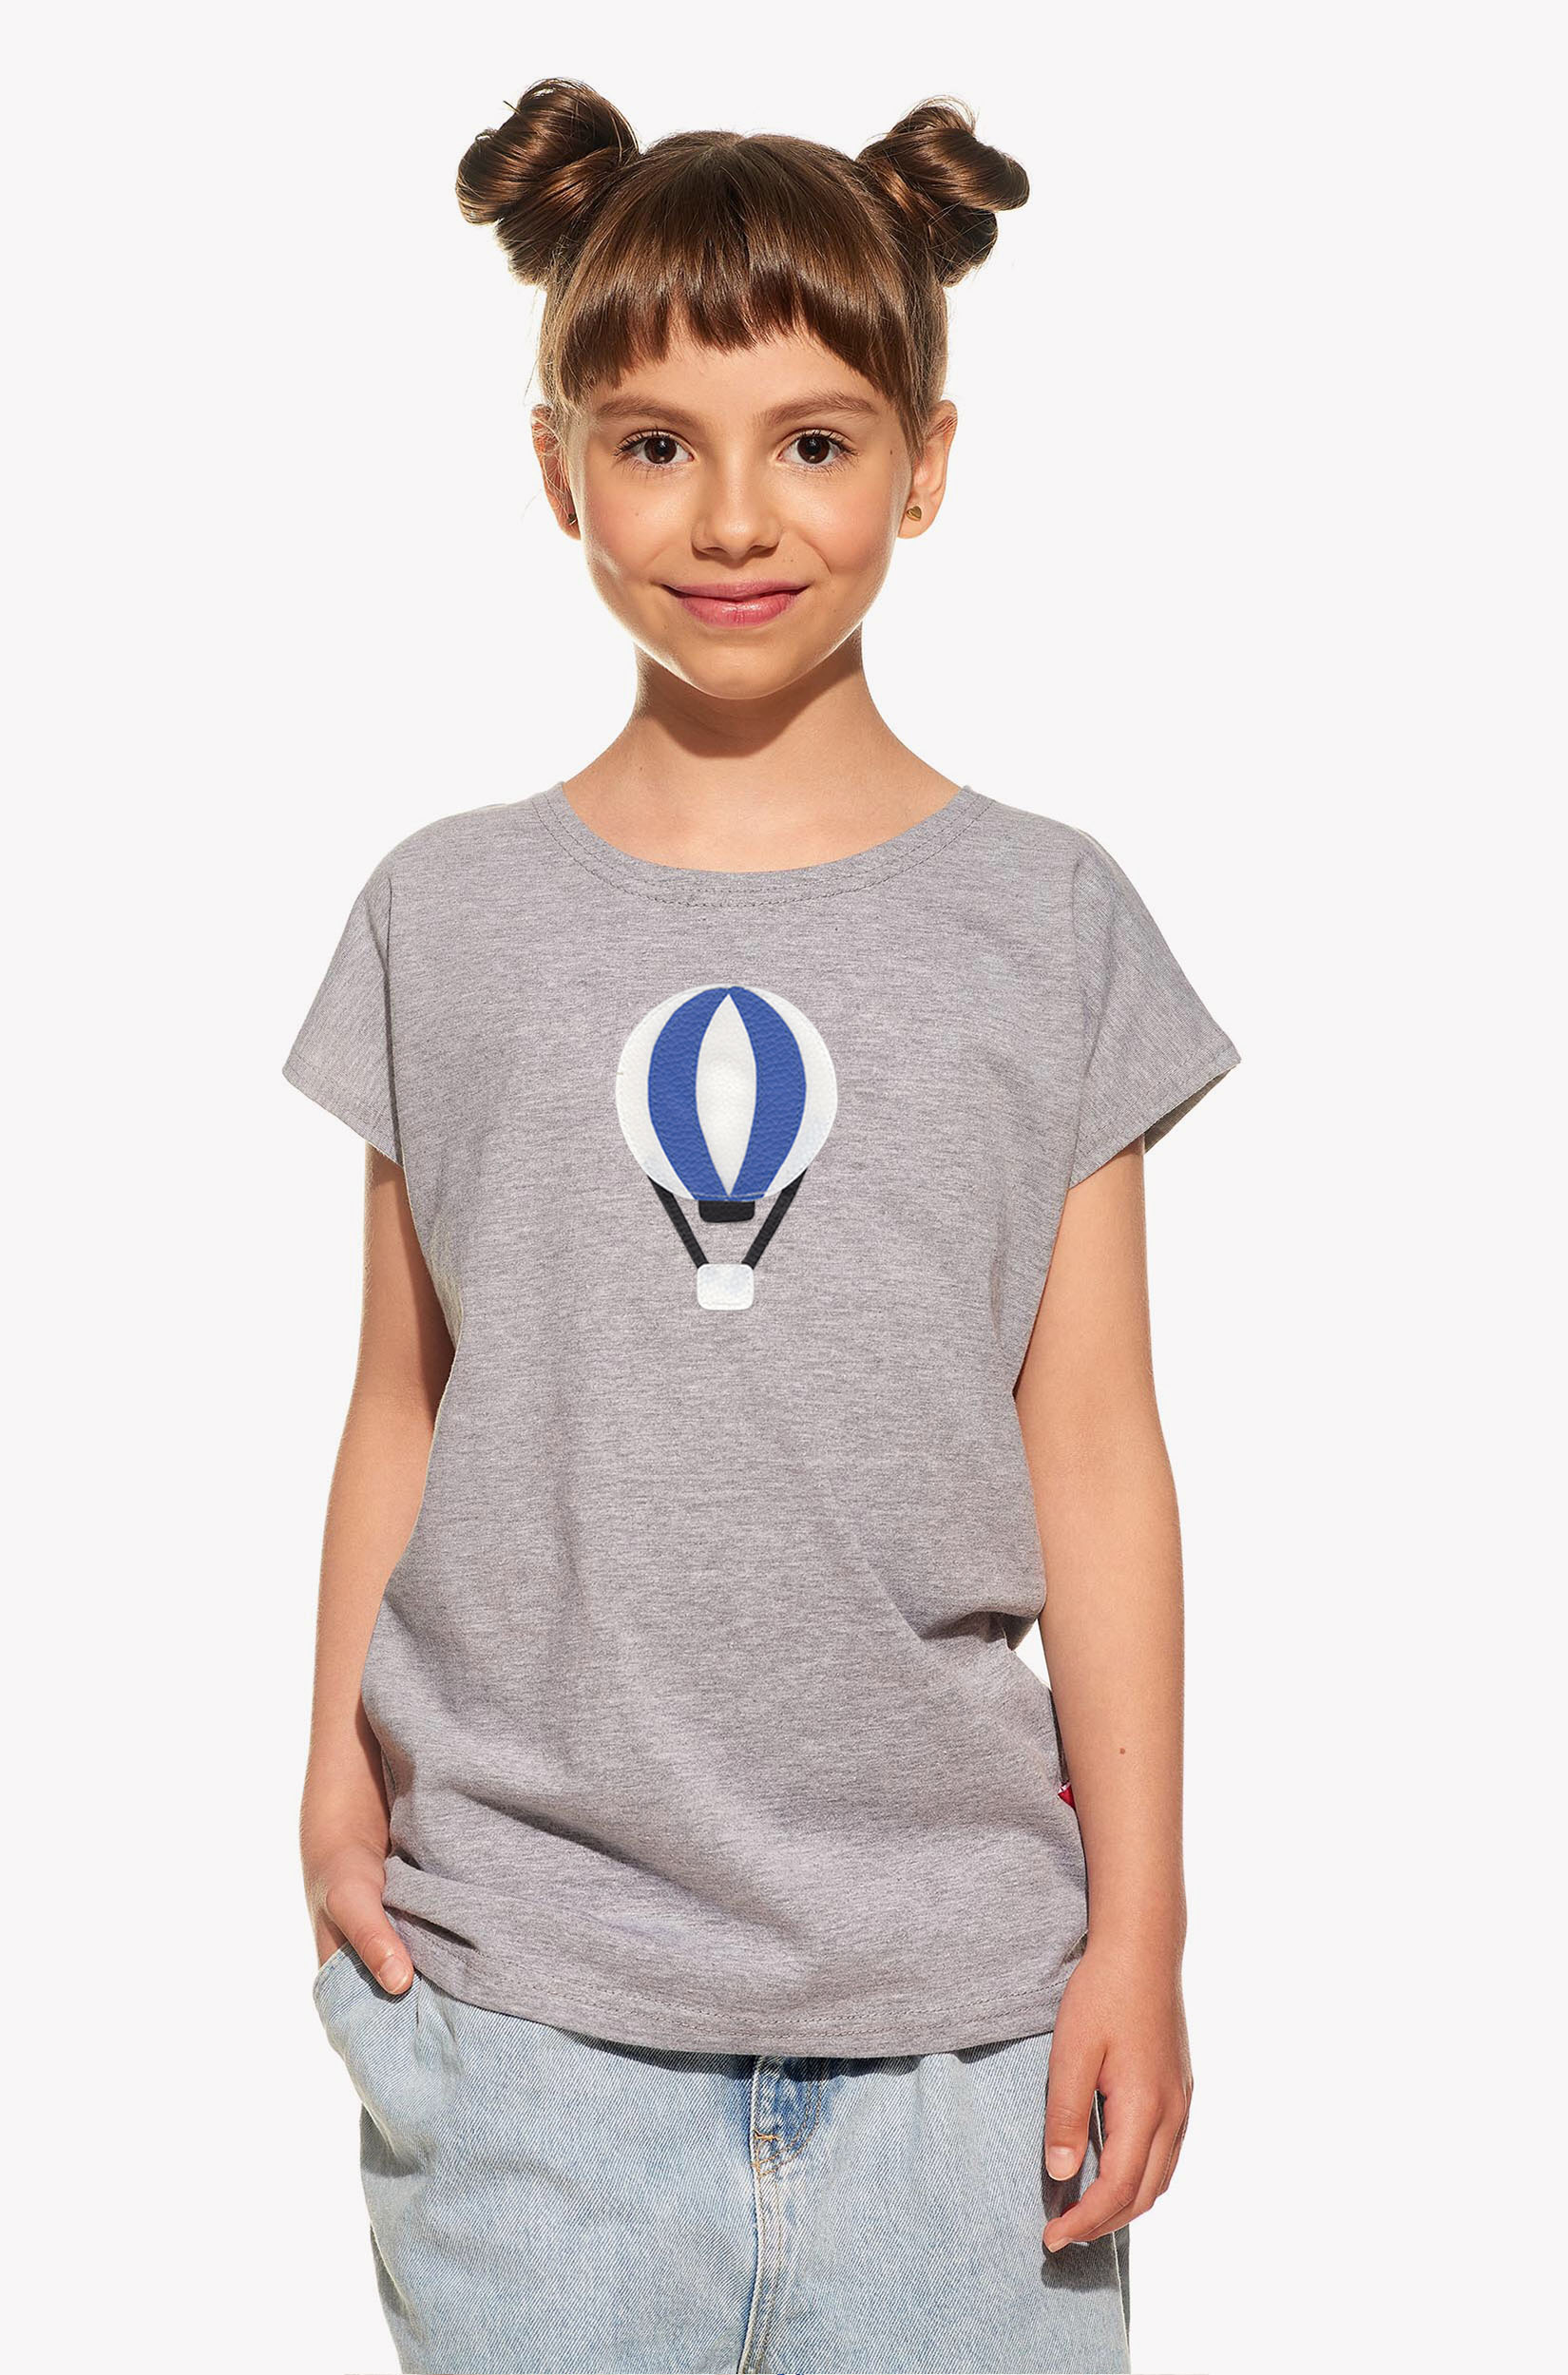 Shirt with airship